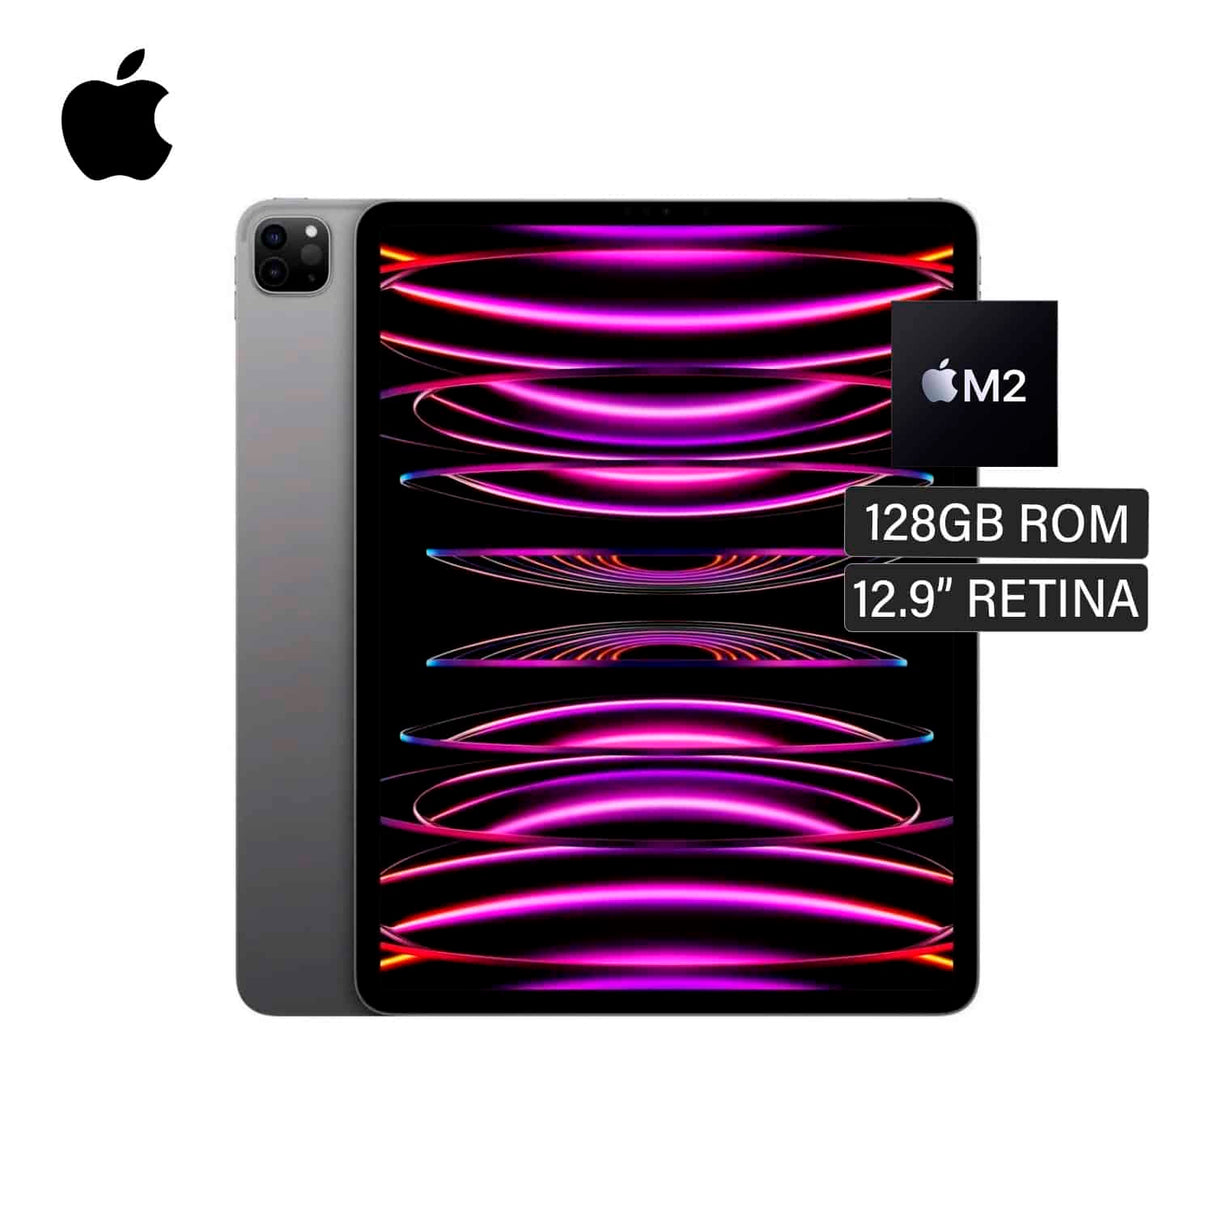 Apple iPad Pro de 11 Wi-Fi 128GB Gris espacial (3ª generación)